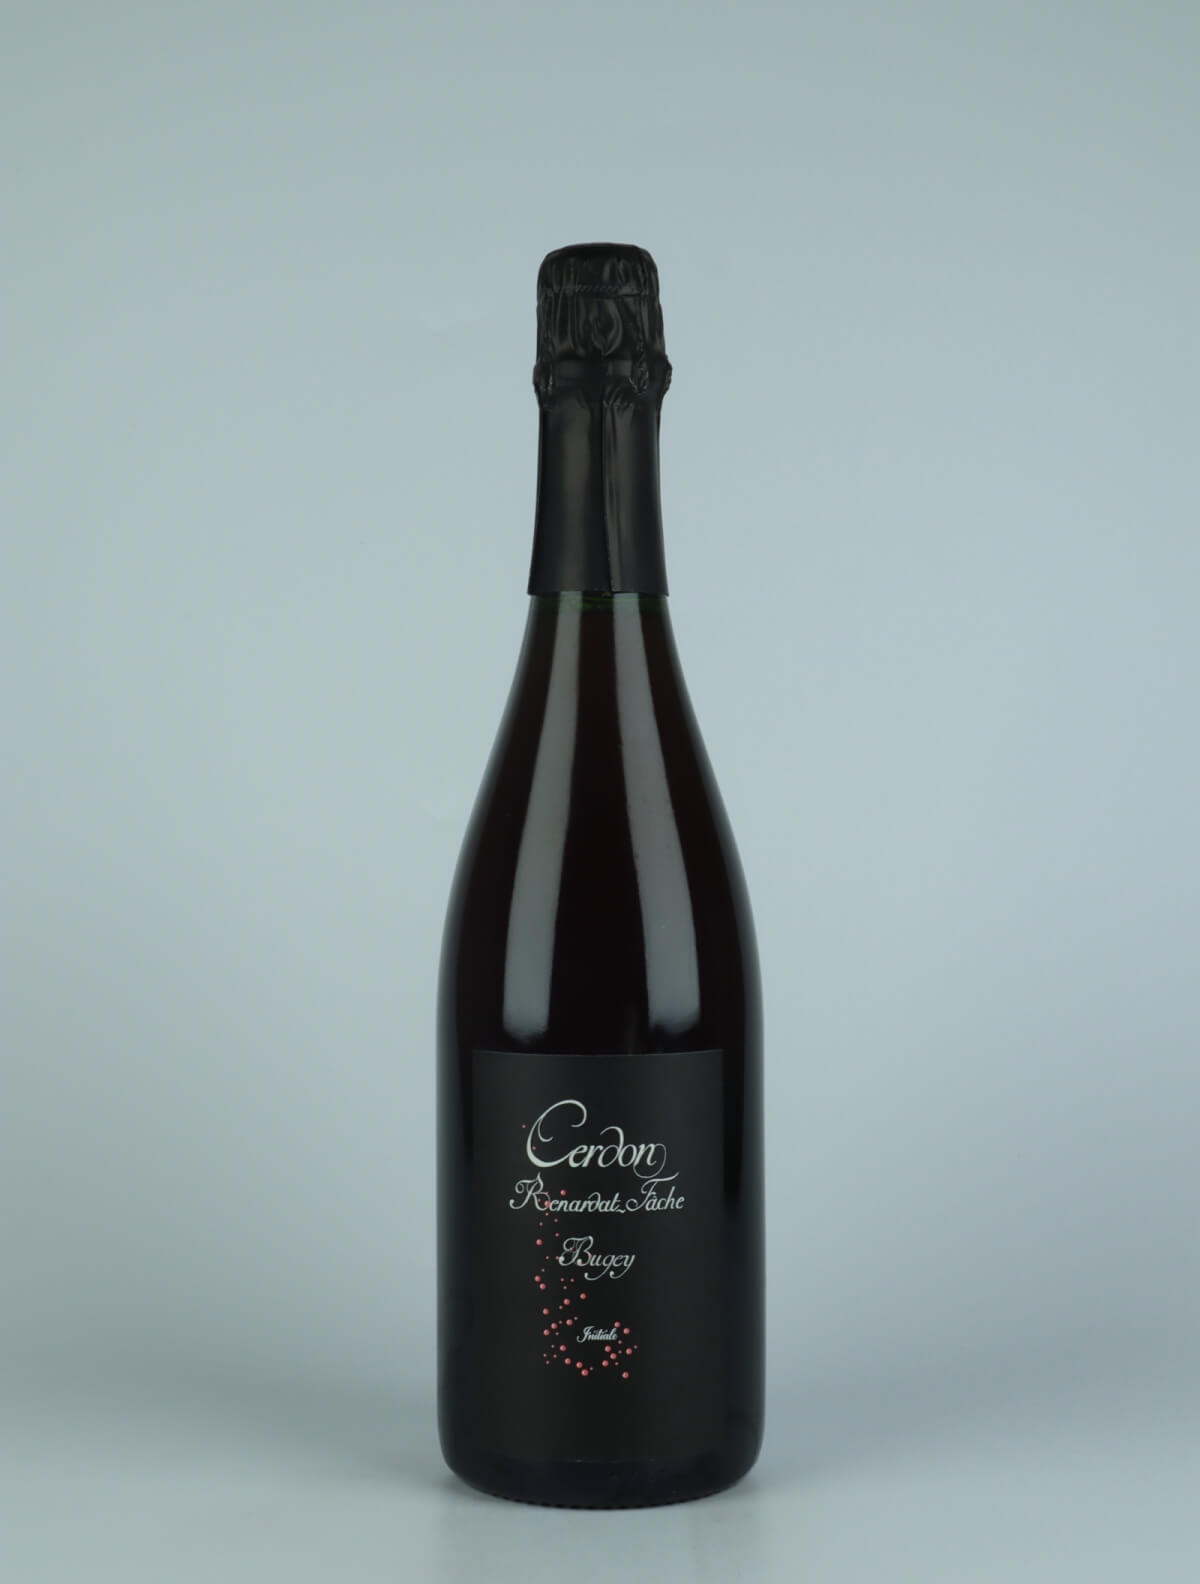 A bottle N.V. Bugey Cerdon - Initiale Sparkling from Renardat Fache, Bugey in France